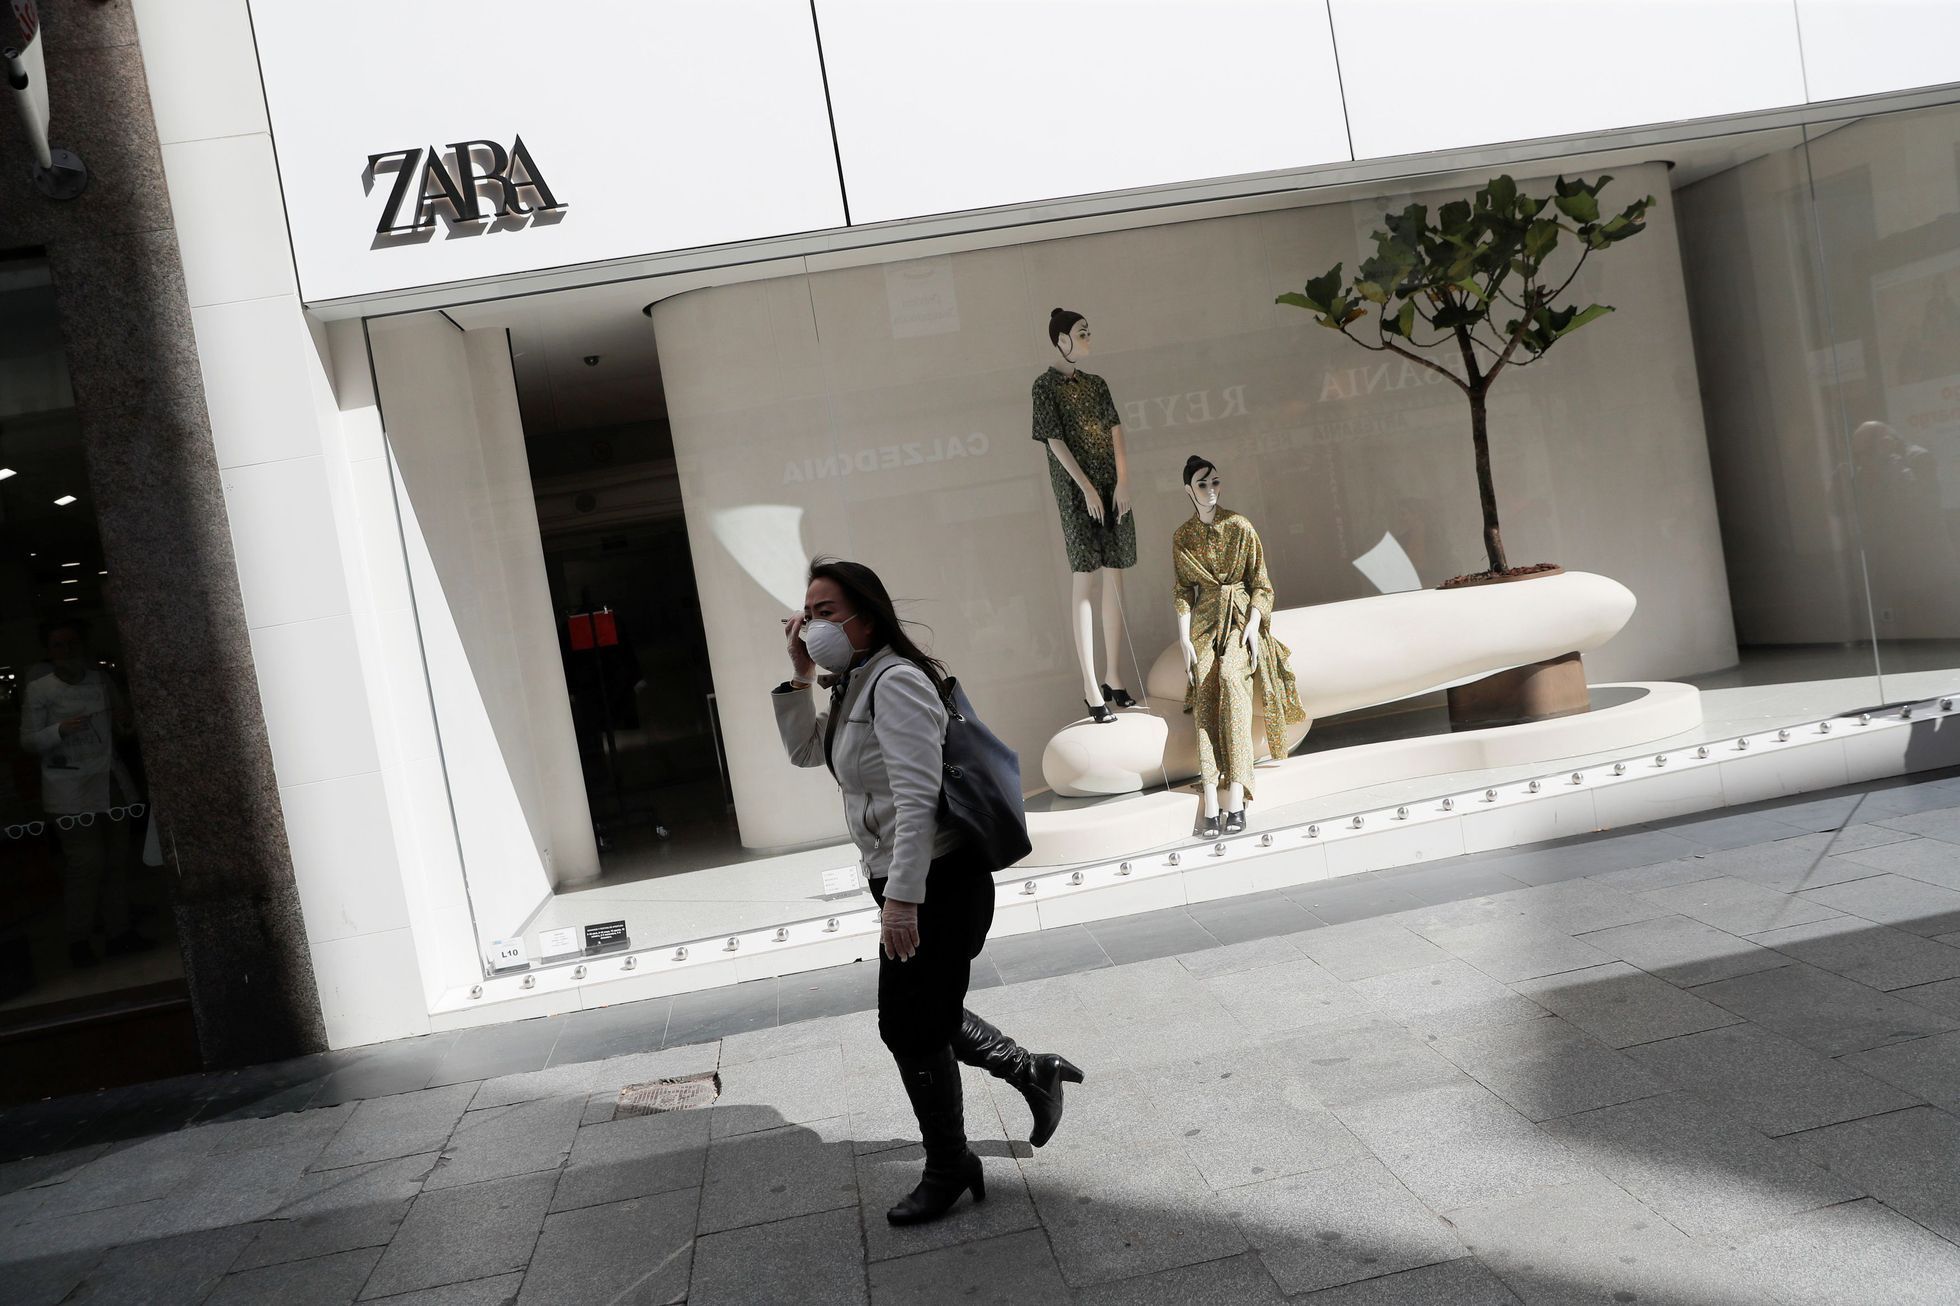 Obchod Zara v Madridu v době koronaviru.